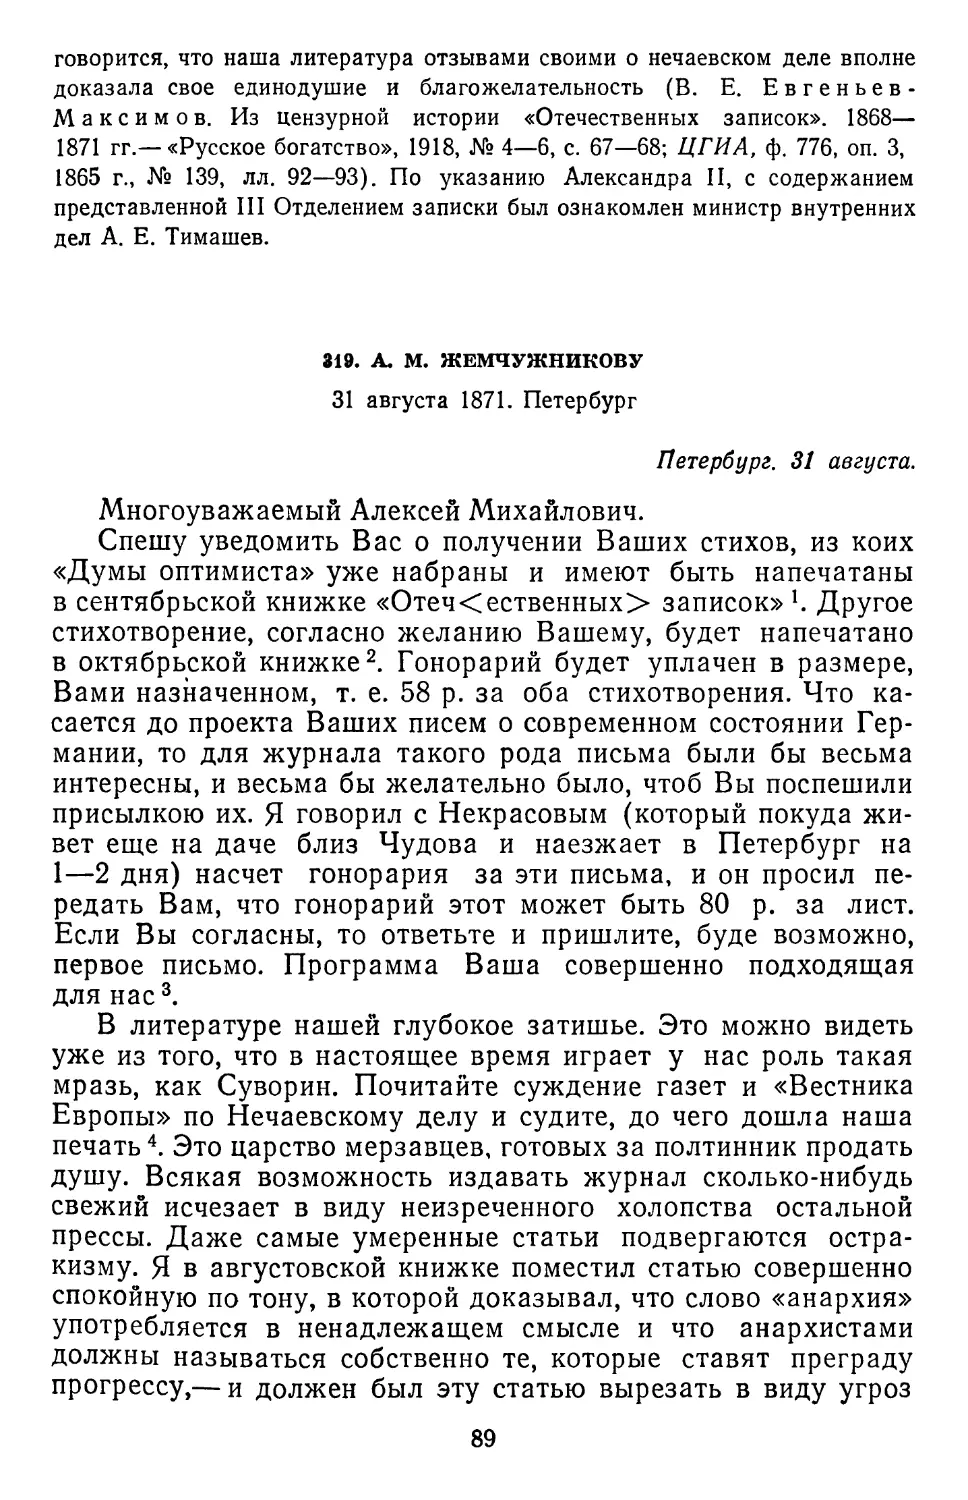 319.А.М.Жемчужникову. 31 августа 1871. Петербург